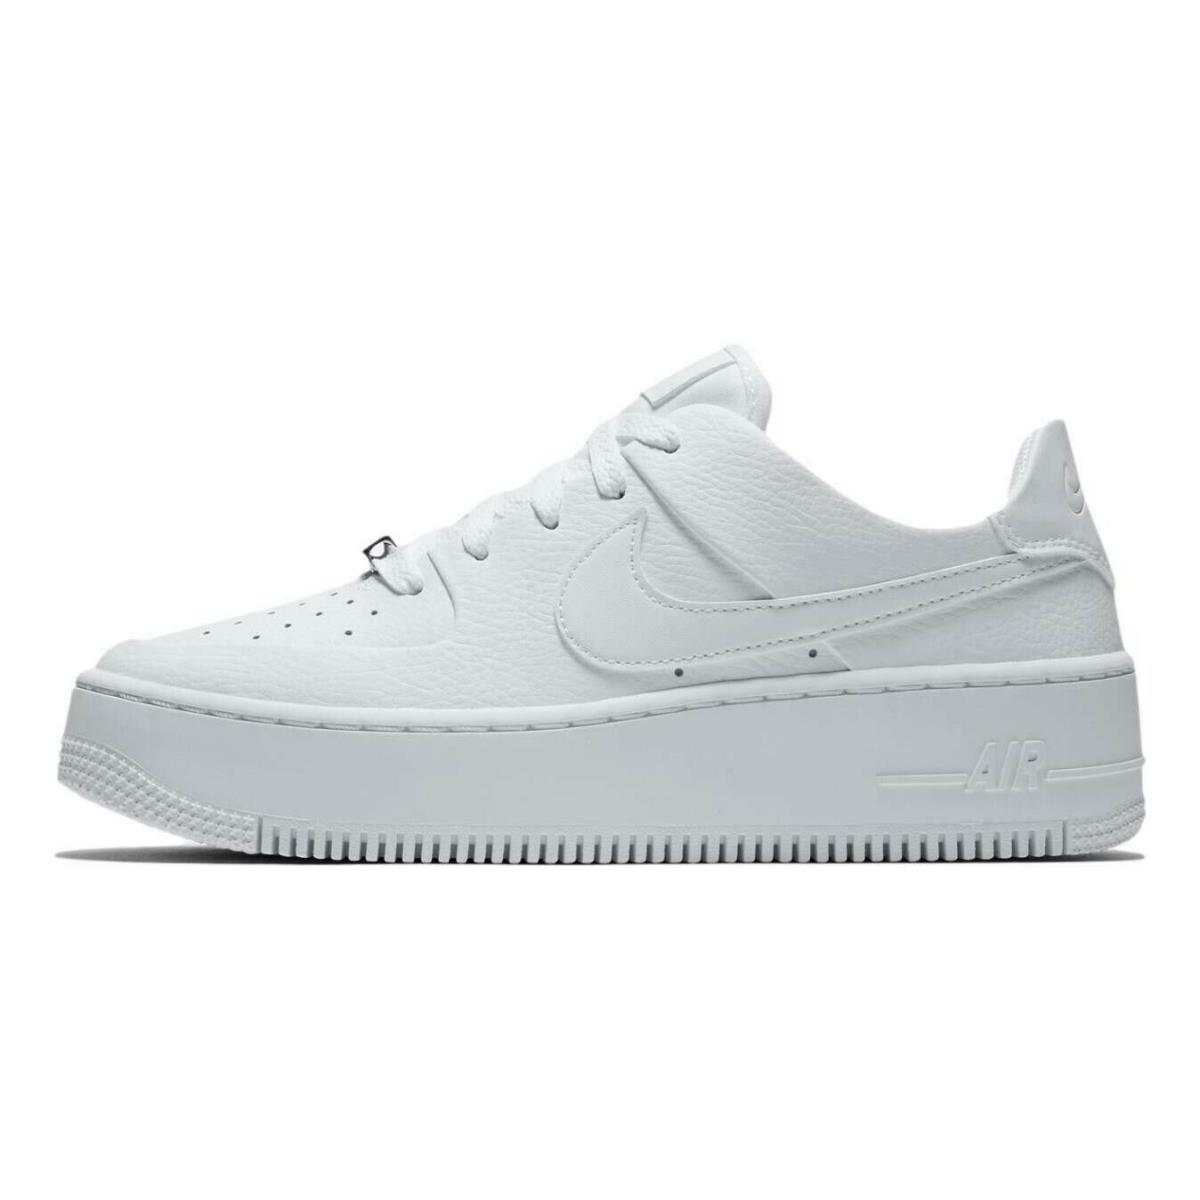 Nike Air Force 1 Sage Low Women s Sz 9 Triple White Shoes AR5339 100 - White